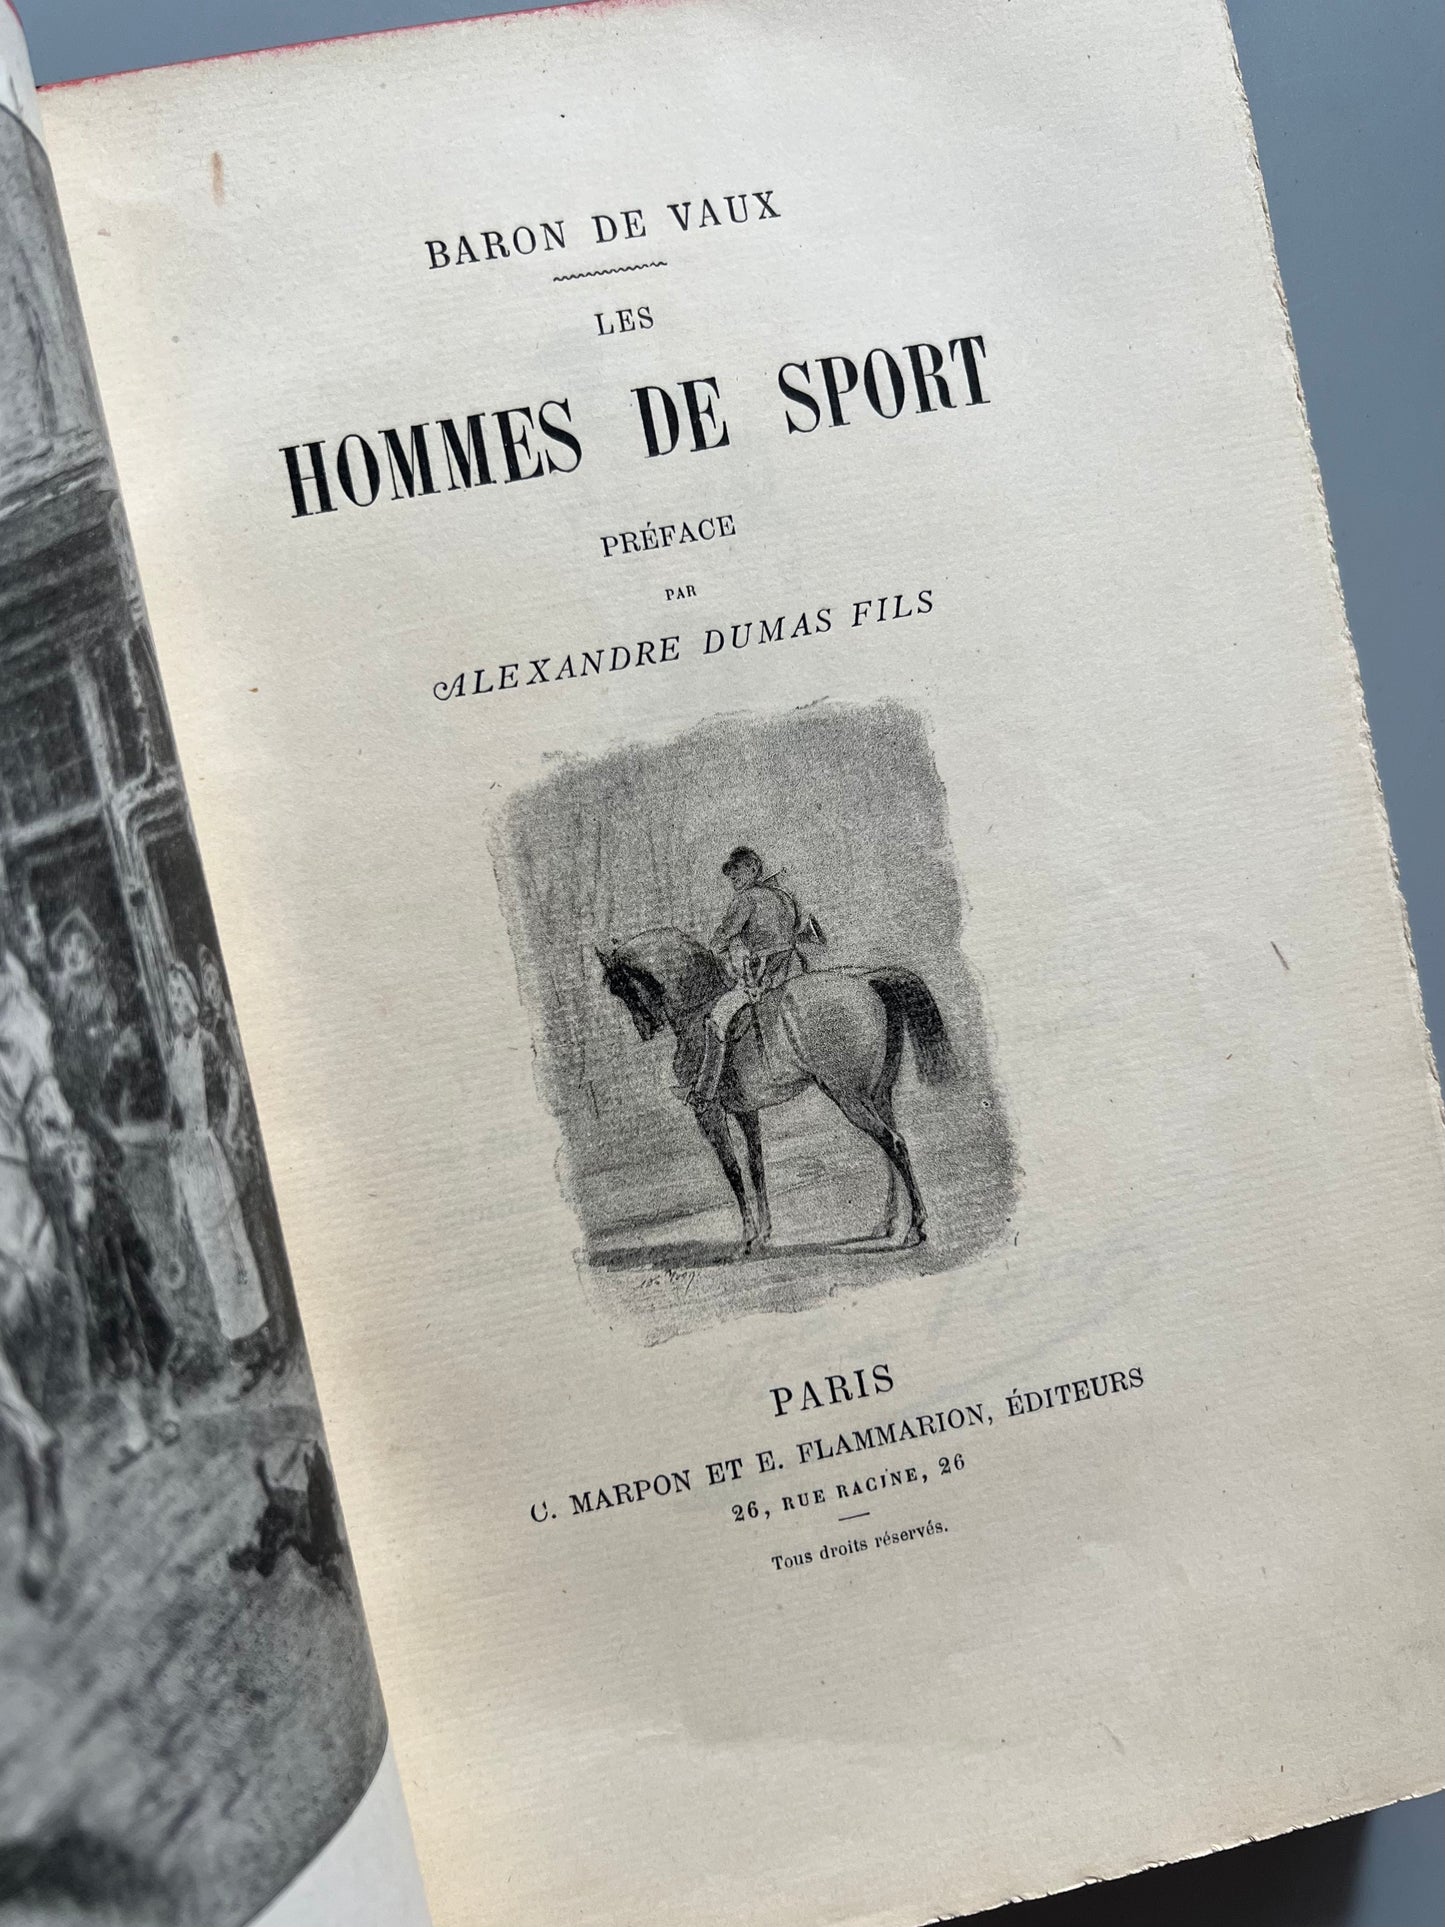 Hommes de sport, Baron de Vaux - C. Marpon et E. Flammarion éditeurs, ca. 1900